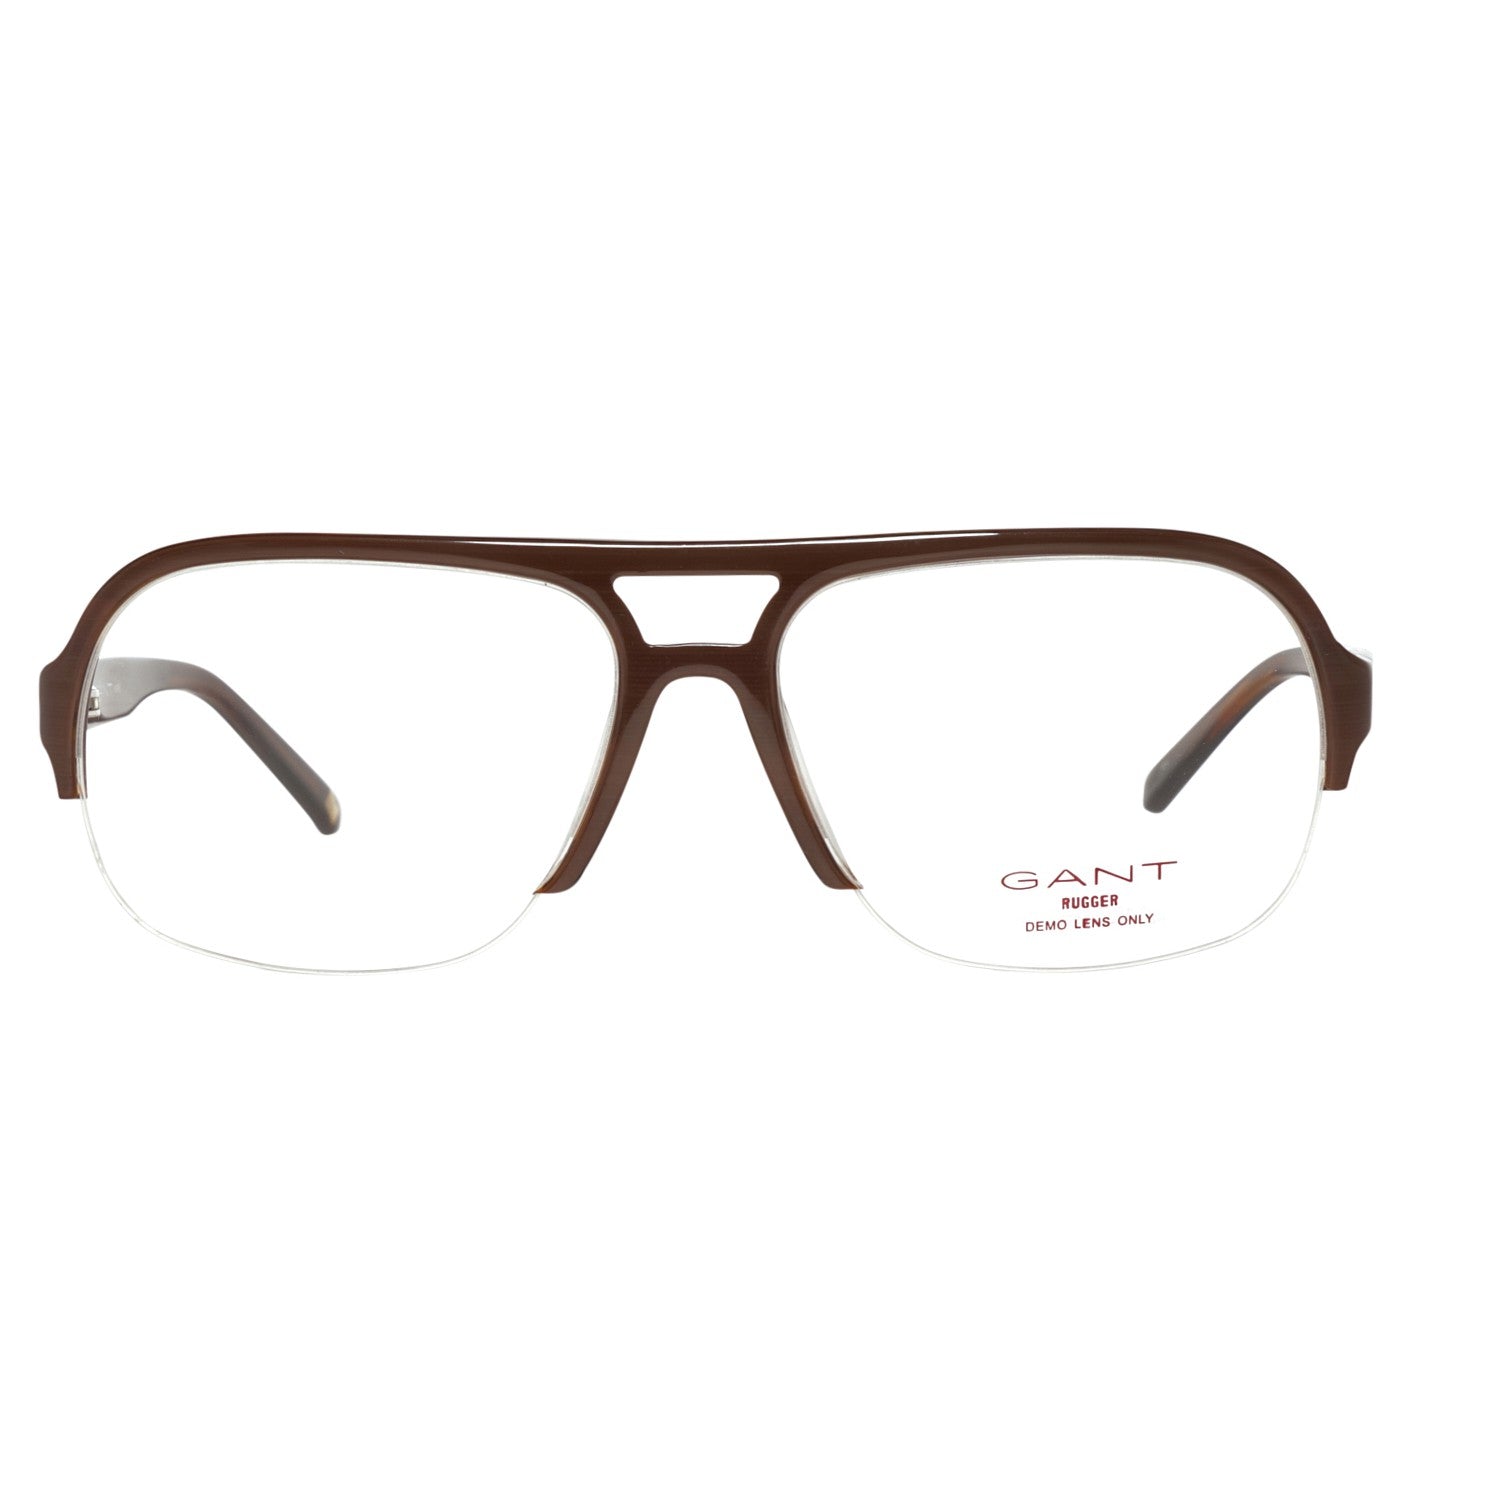 Gant Frames Gant Glasses Frames GRA133 H23 56 | GR KALB DKBRN 56 Eyeglasses Eyewear UK USA Australia 